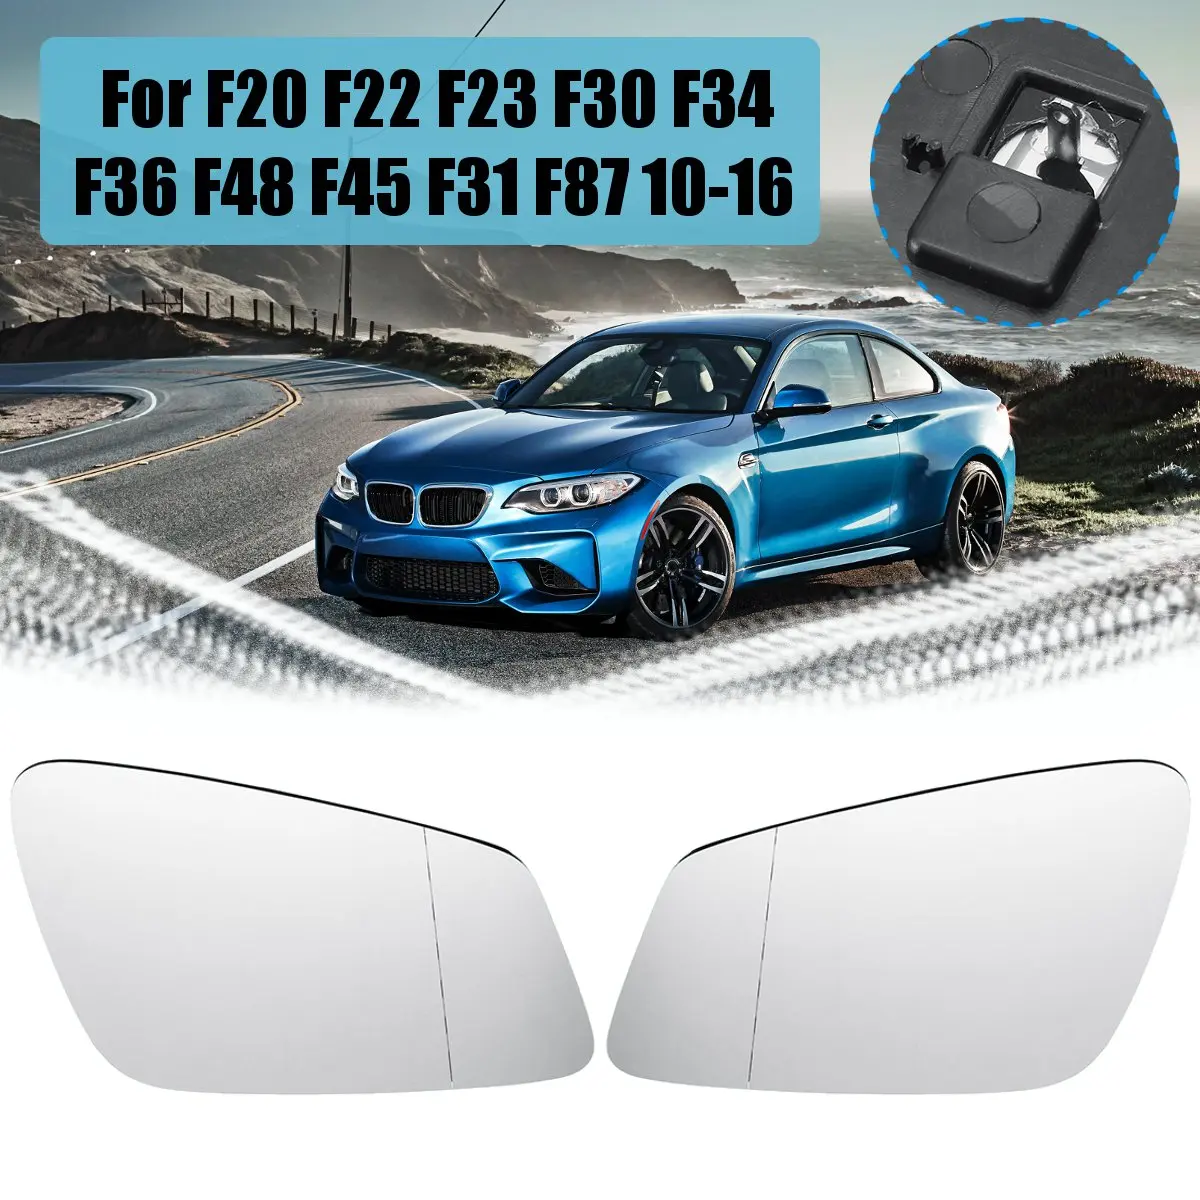 Влево/Вправо Широкий формат зеркало с подогревом для BMW F20 F22 F23 F30 F34 F36 F48 F45 F31 F87 2010 2011 2012 2013